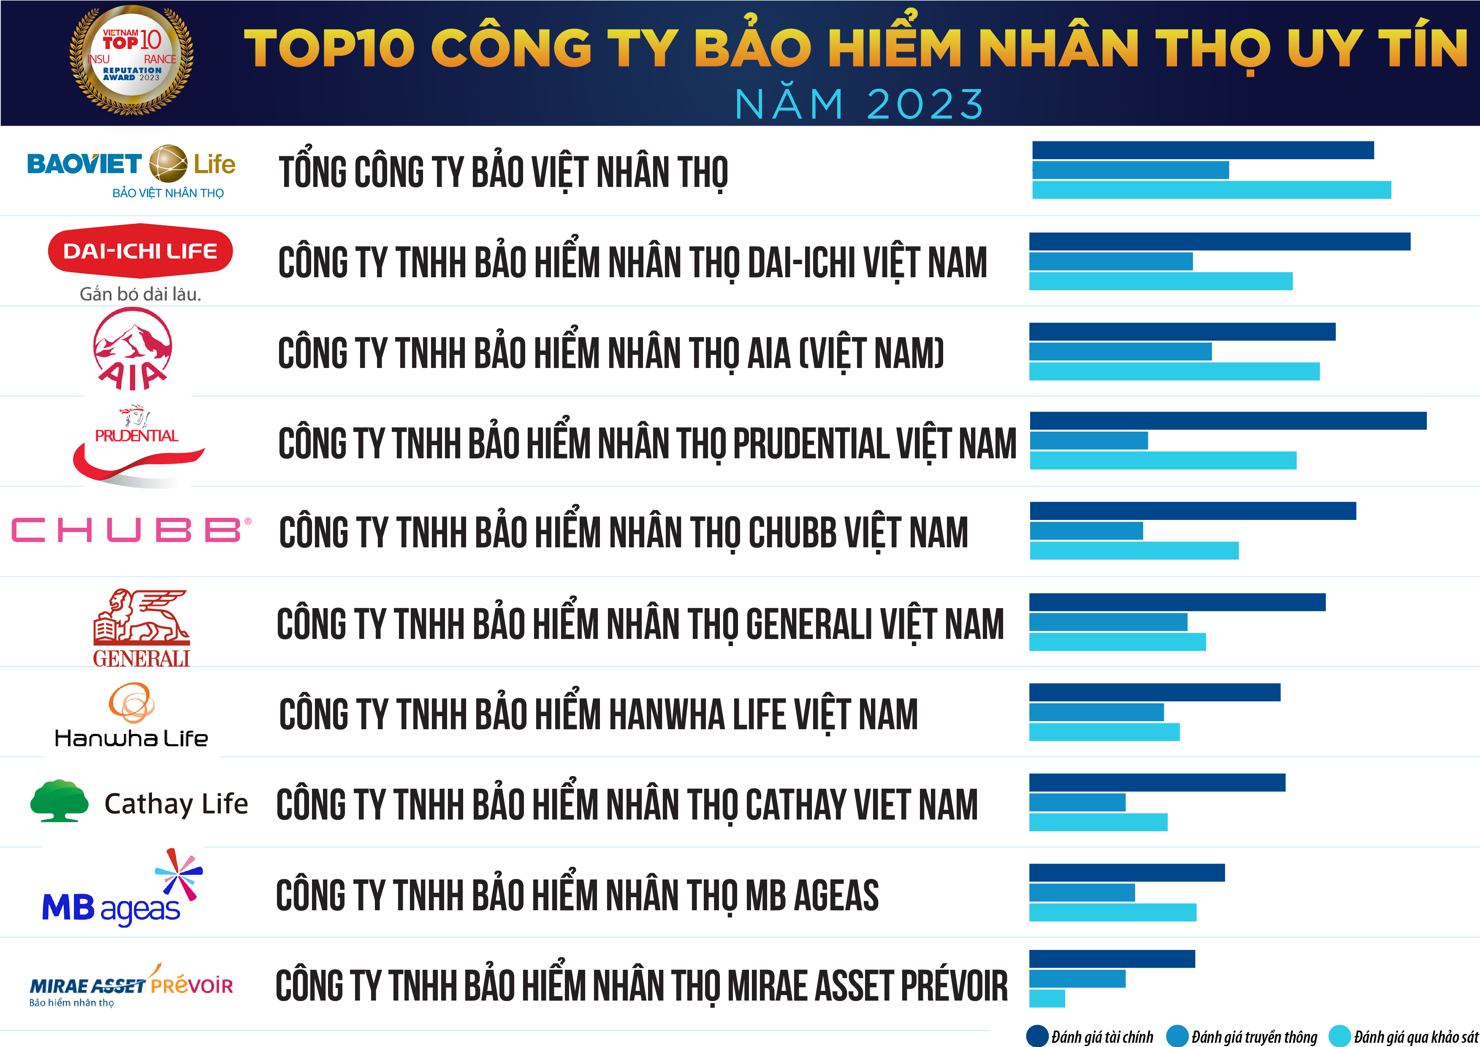 Top 10 C&ocirc;ng ty Bảo hiểm Nh&acirc;n thọ uy t&iacute;n năm 2023. Nguồn: Vietnam Report